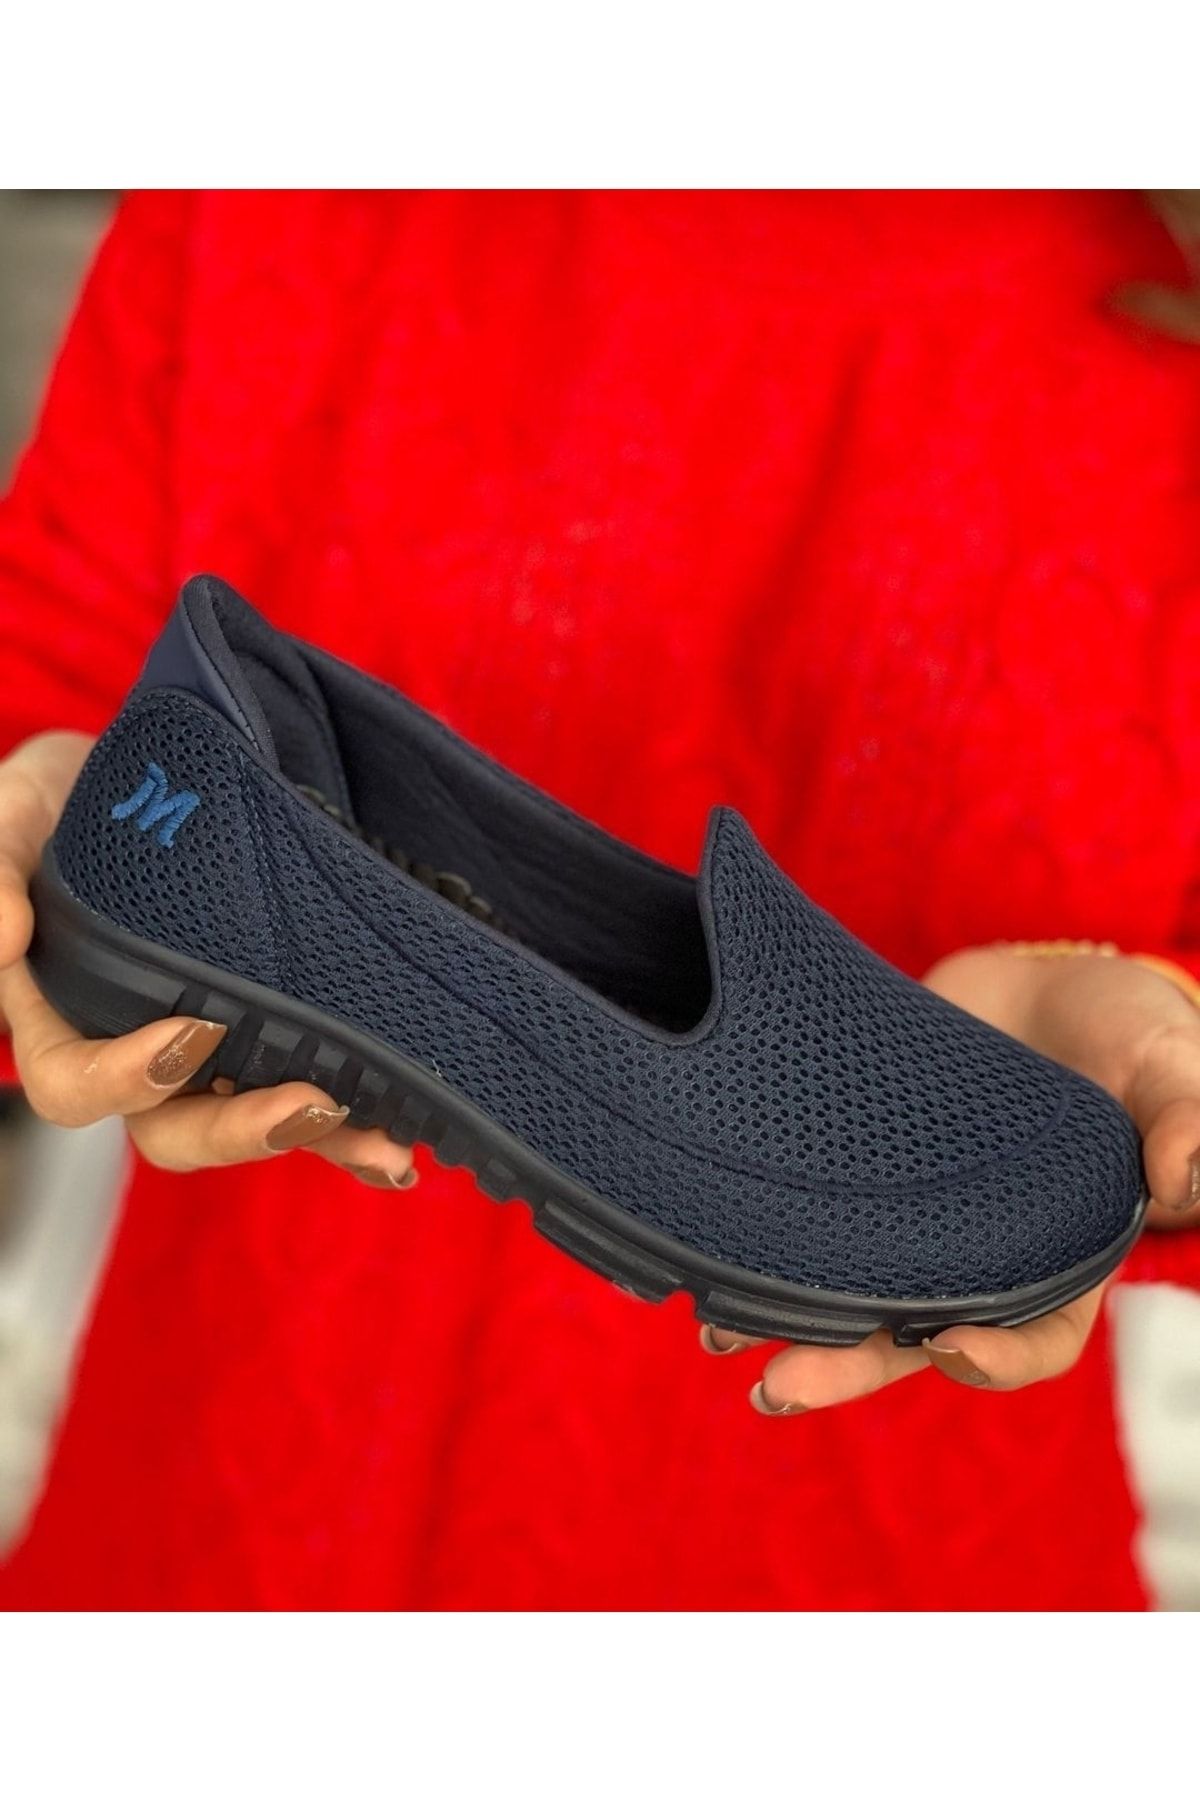 Afilli Kadın Lacivert Casual Günlük Spor Ayakkabı Anne Bağcıksız Rahat Hafif Memory